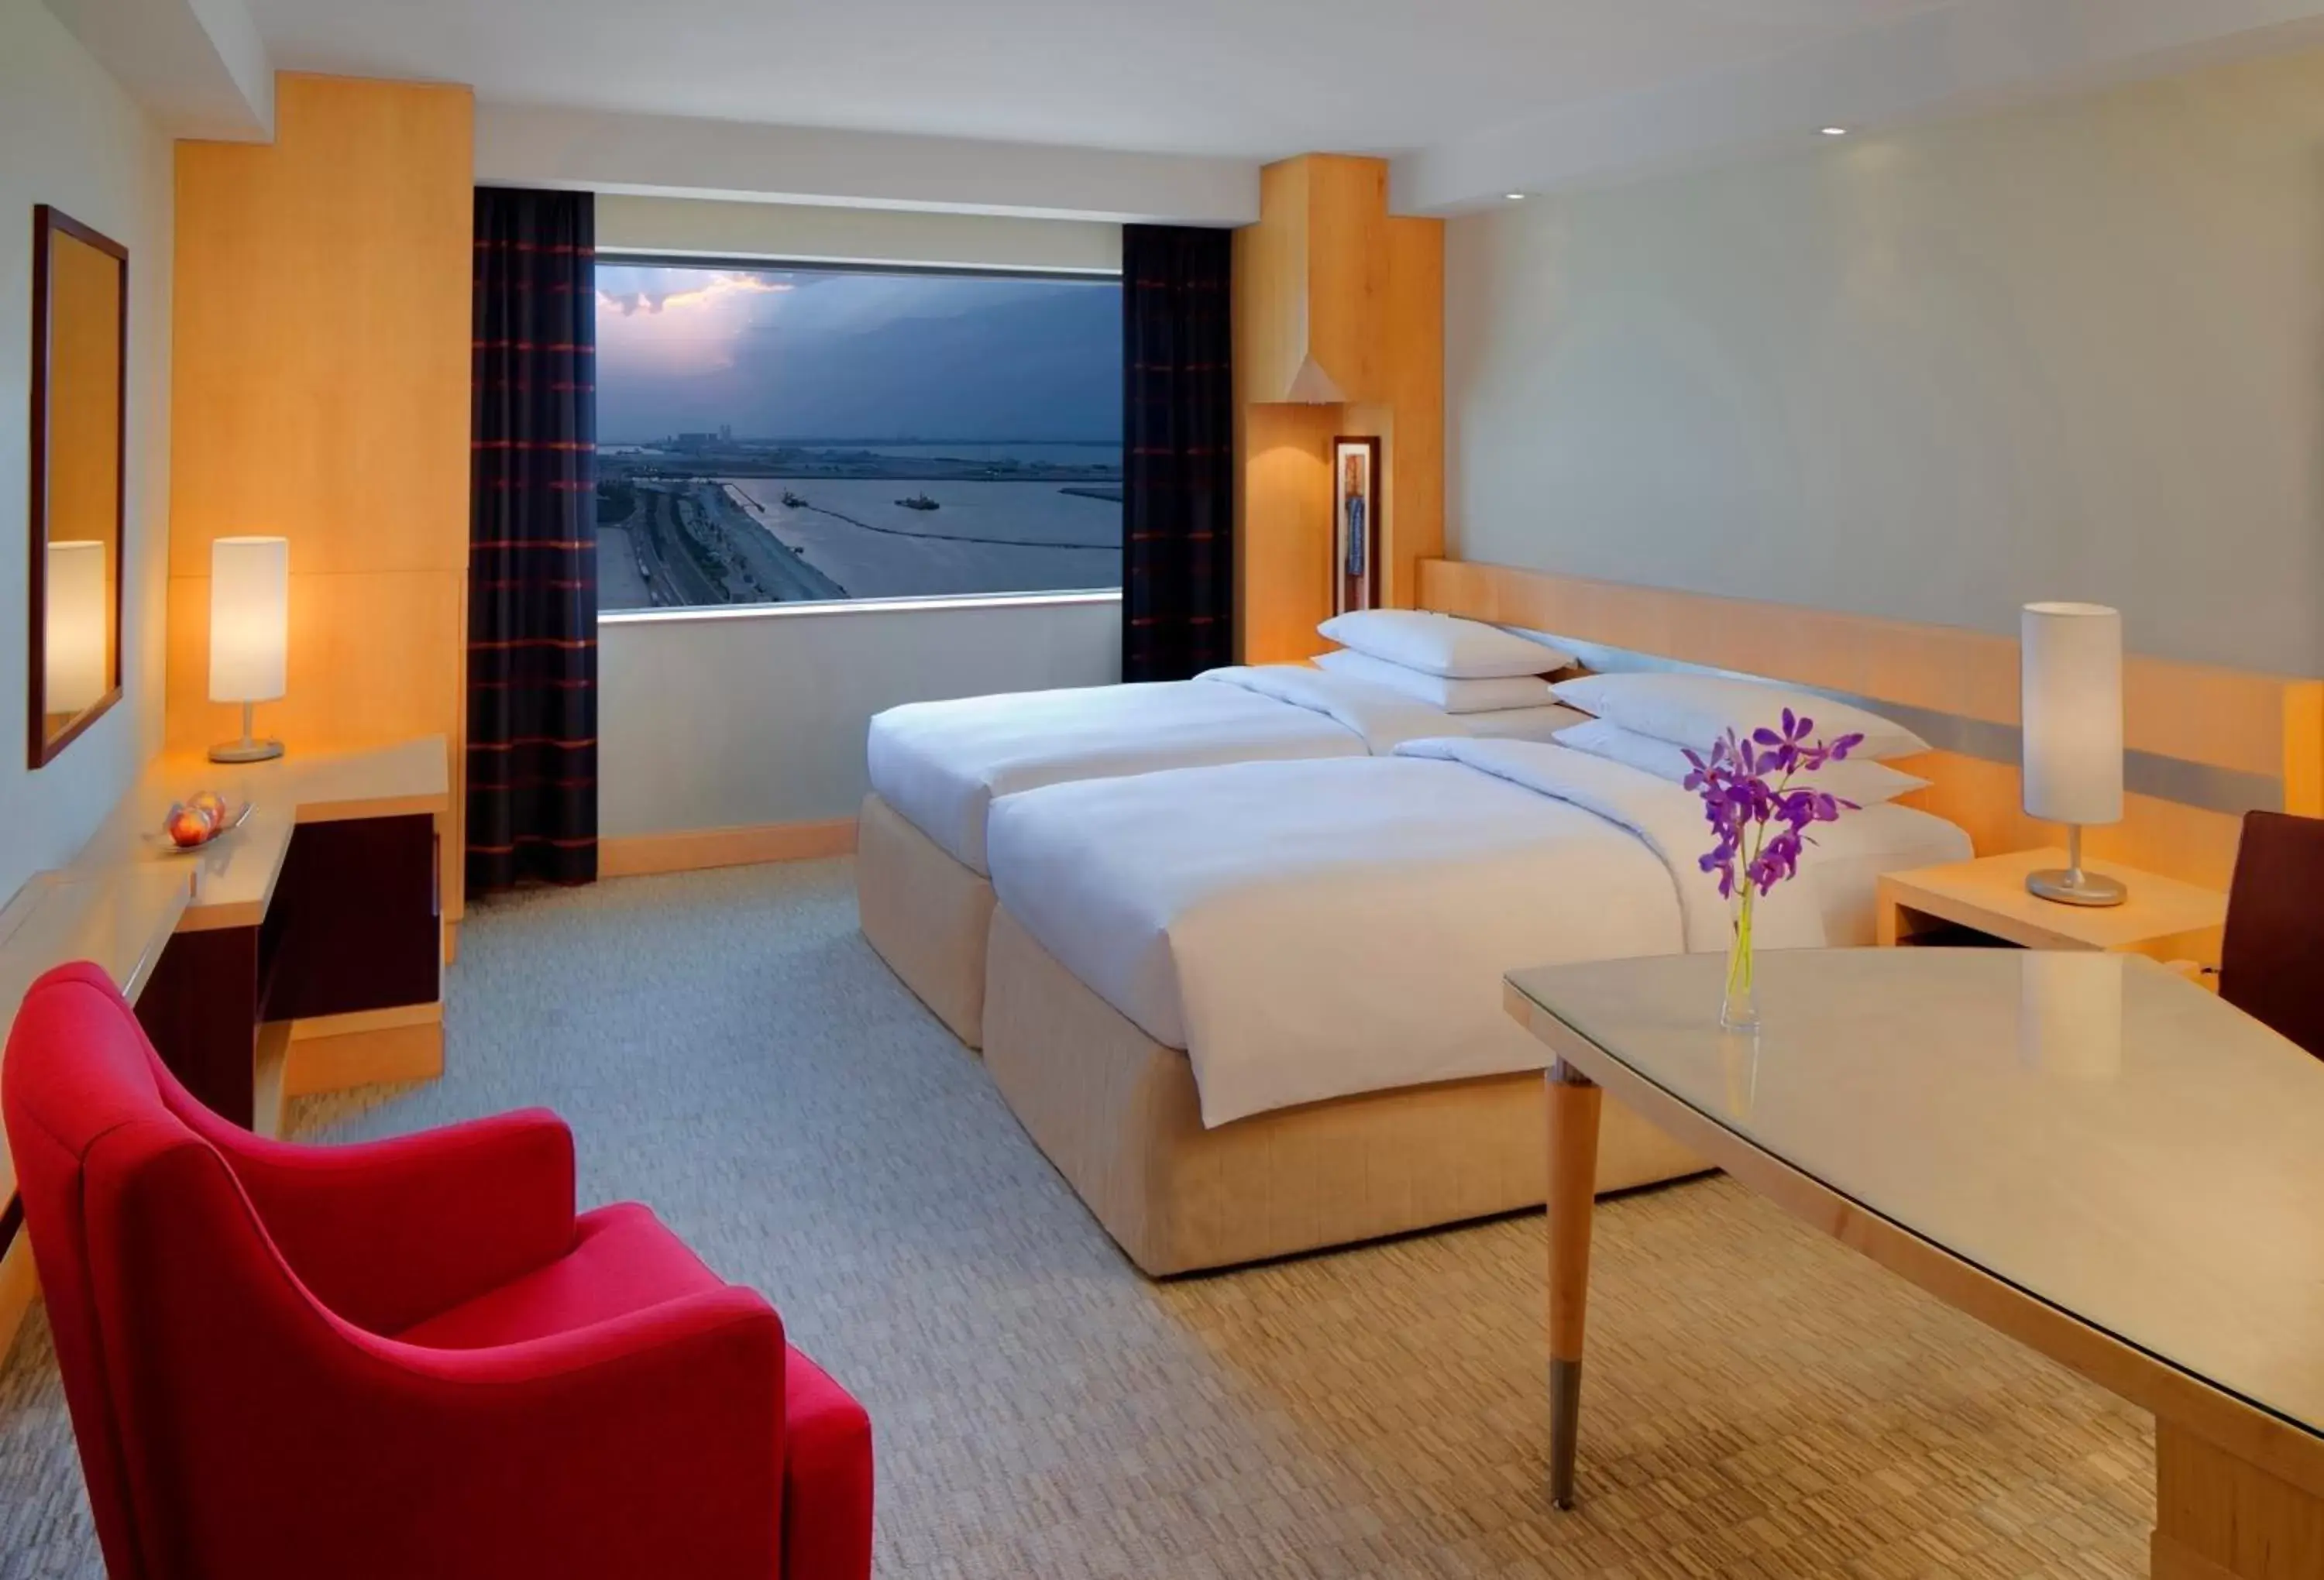 Photo of the whole room in Hyatt Regency Dubai - Corniche